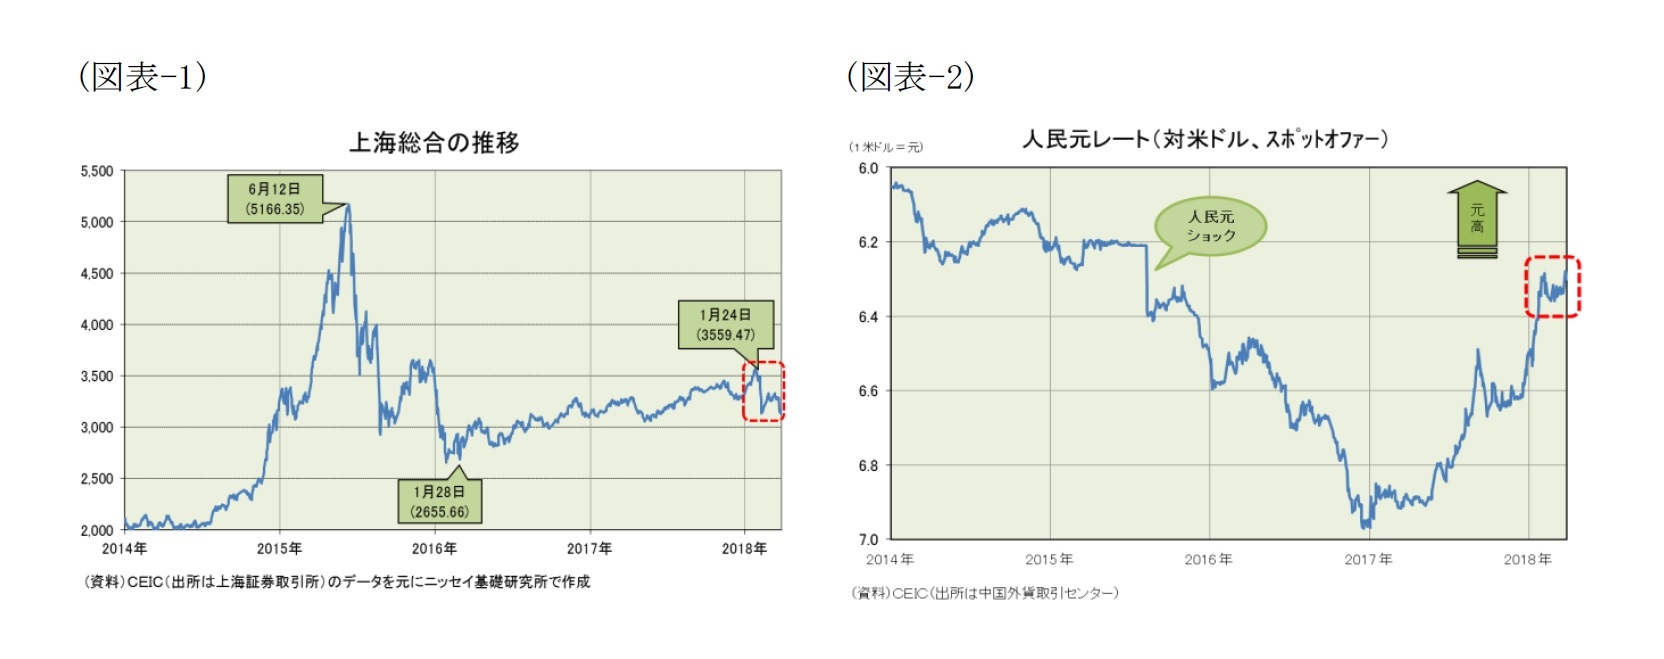 （図表-1）上海総合の推移/（図表-2）人民元レート(対米ドル・スポットオファー)